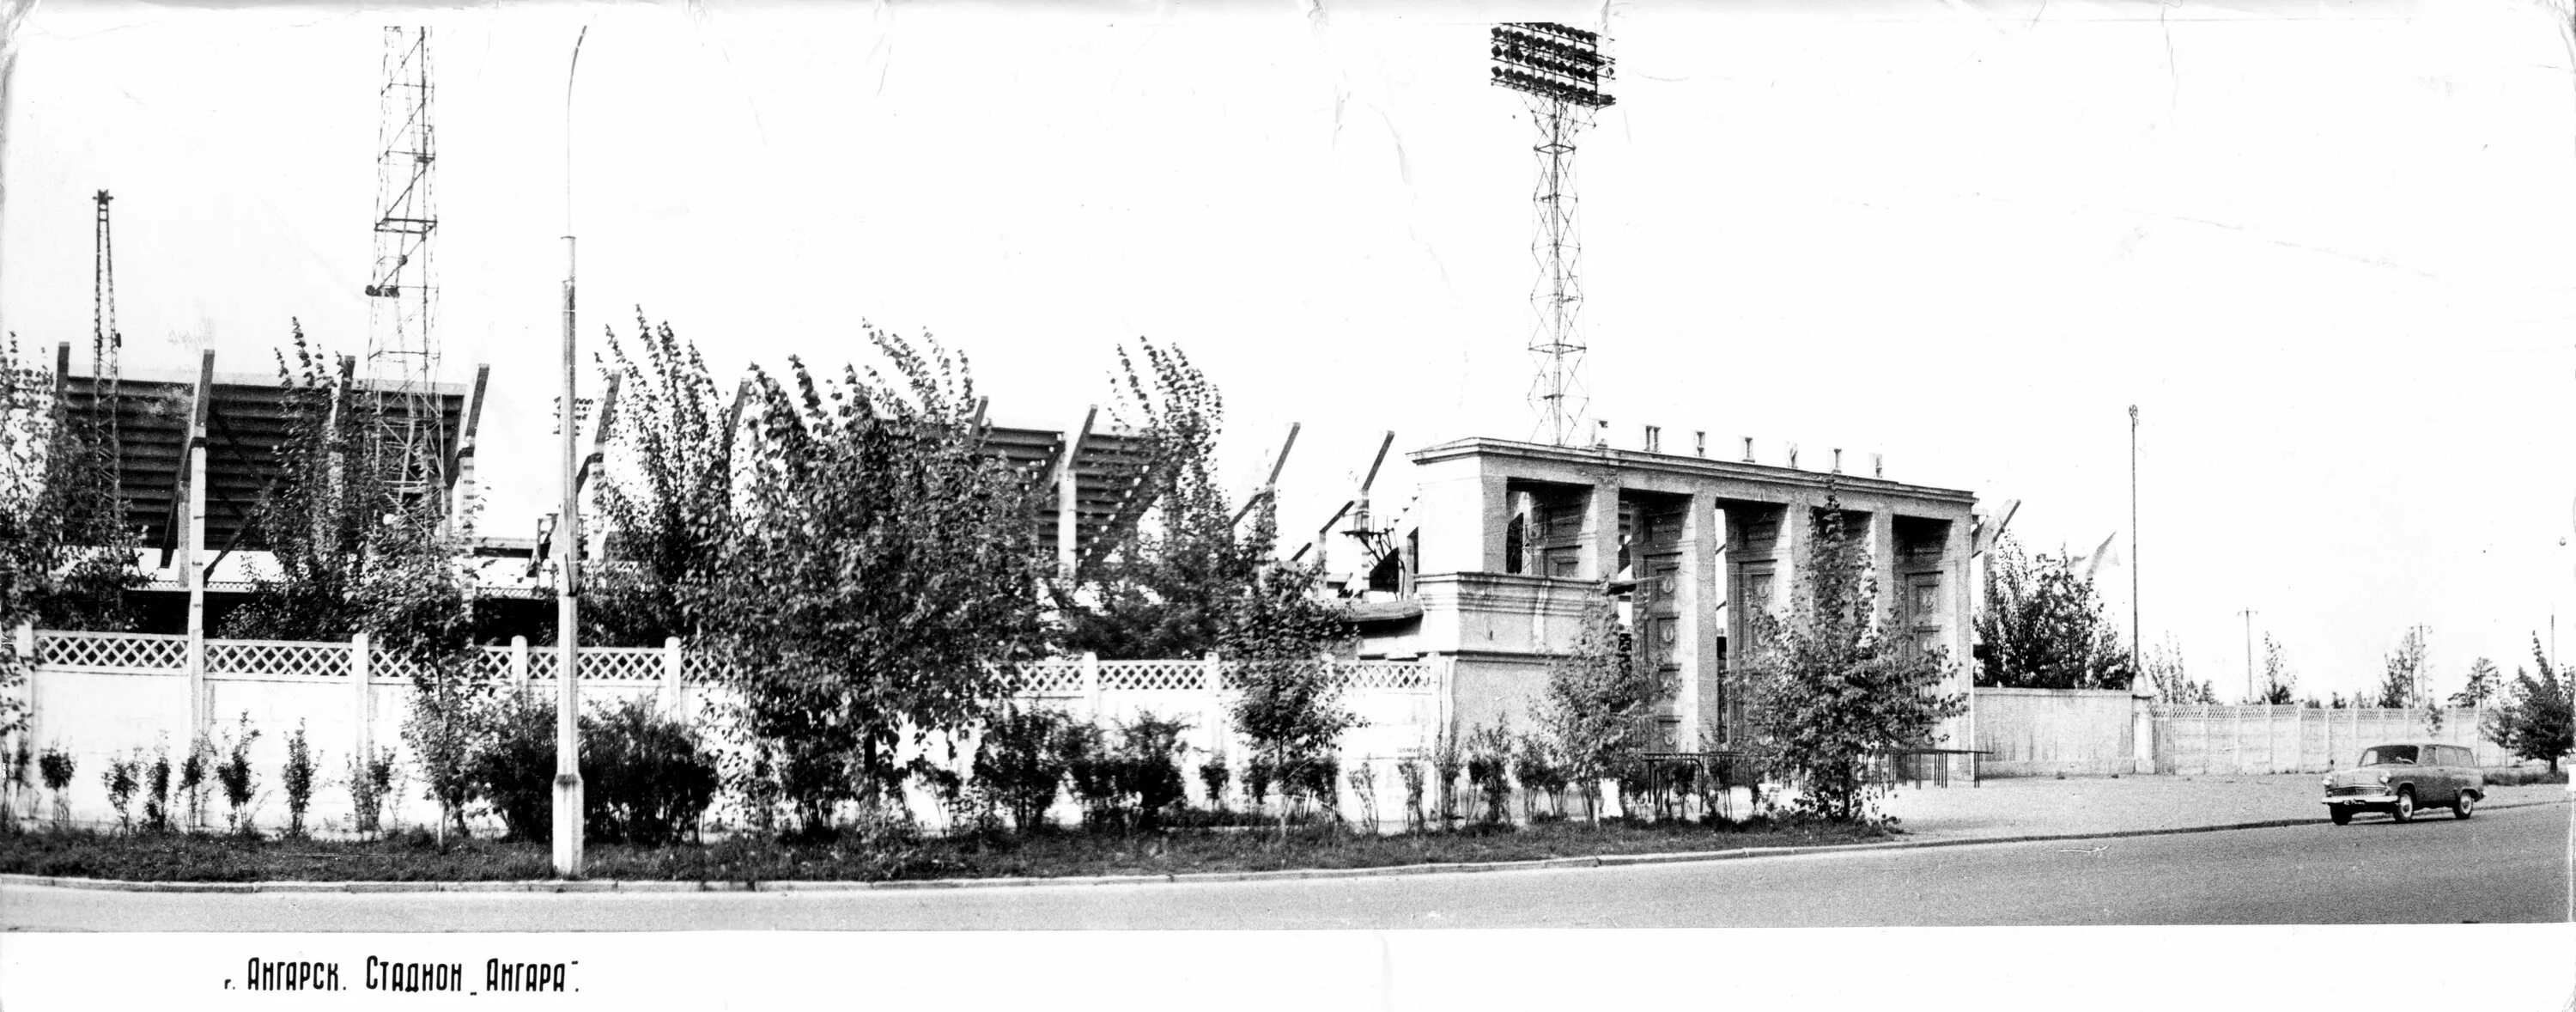 Г Ангарск стадион Ангара. Стадион Ангарск. Стадион Ангара в 50-е годы в Ангарске. Ангарск 1960. Ангарск стадионы